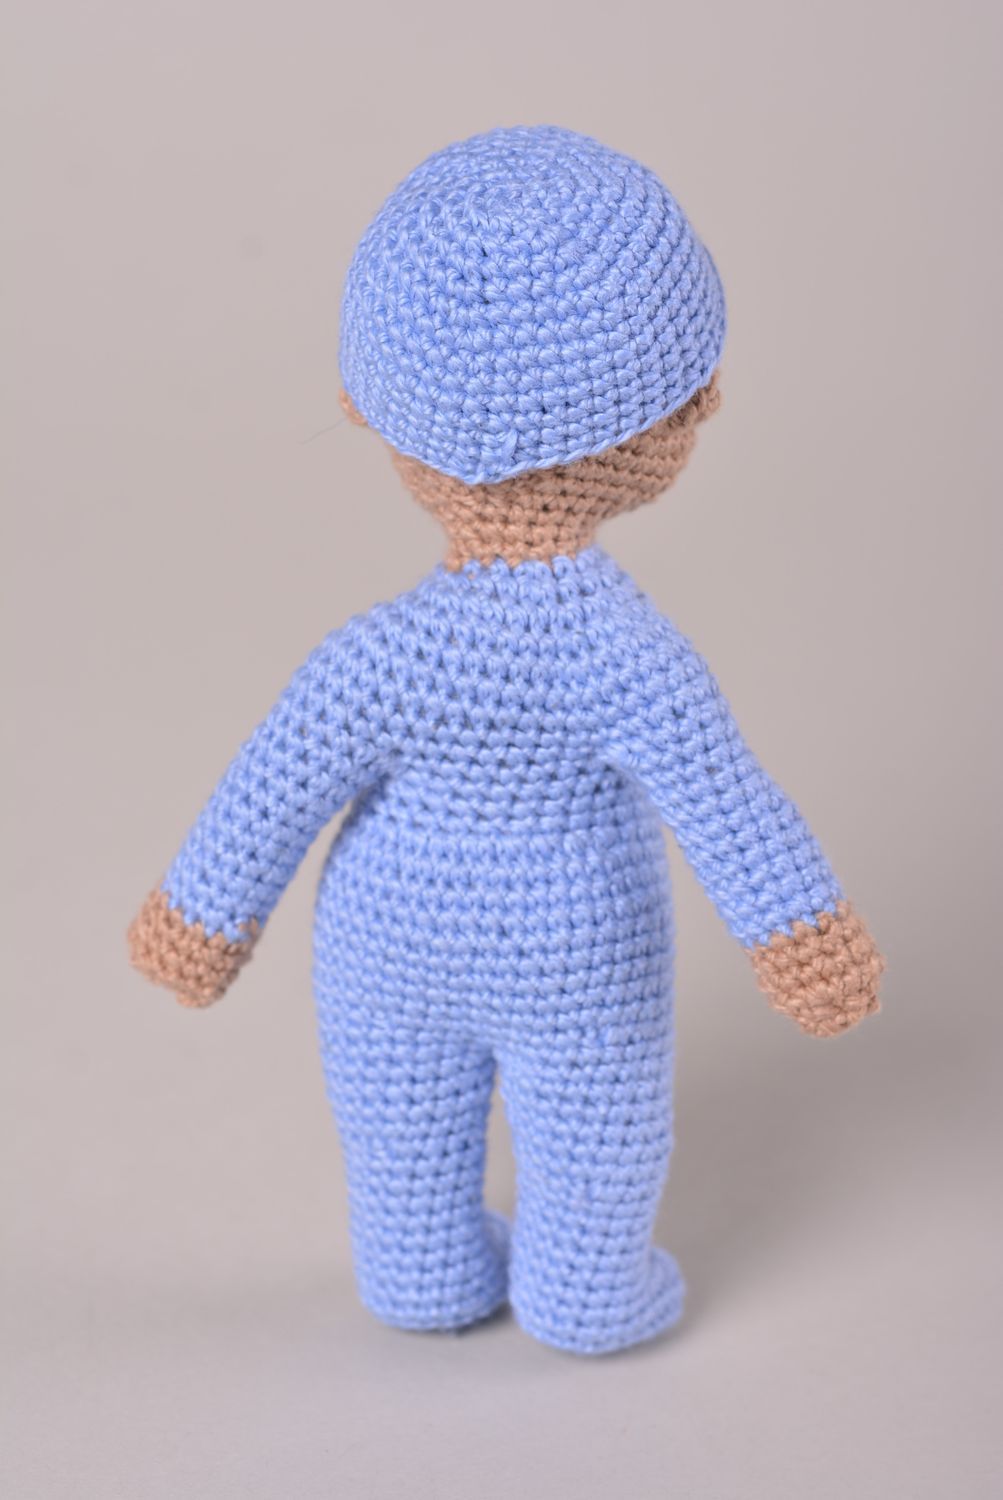 Мягкая игрушка кукла ручной работы малыш пупсик кукла крючком в голубой пижамке фото 3